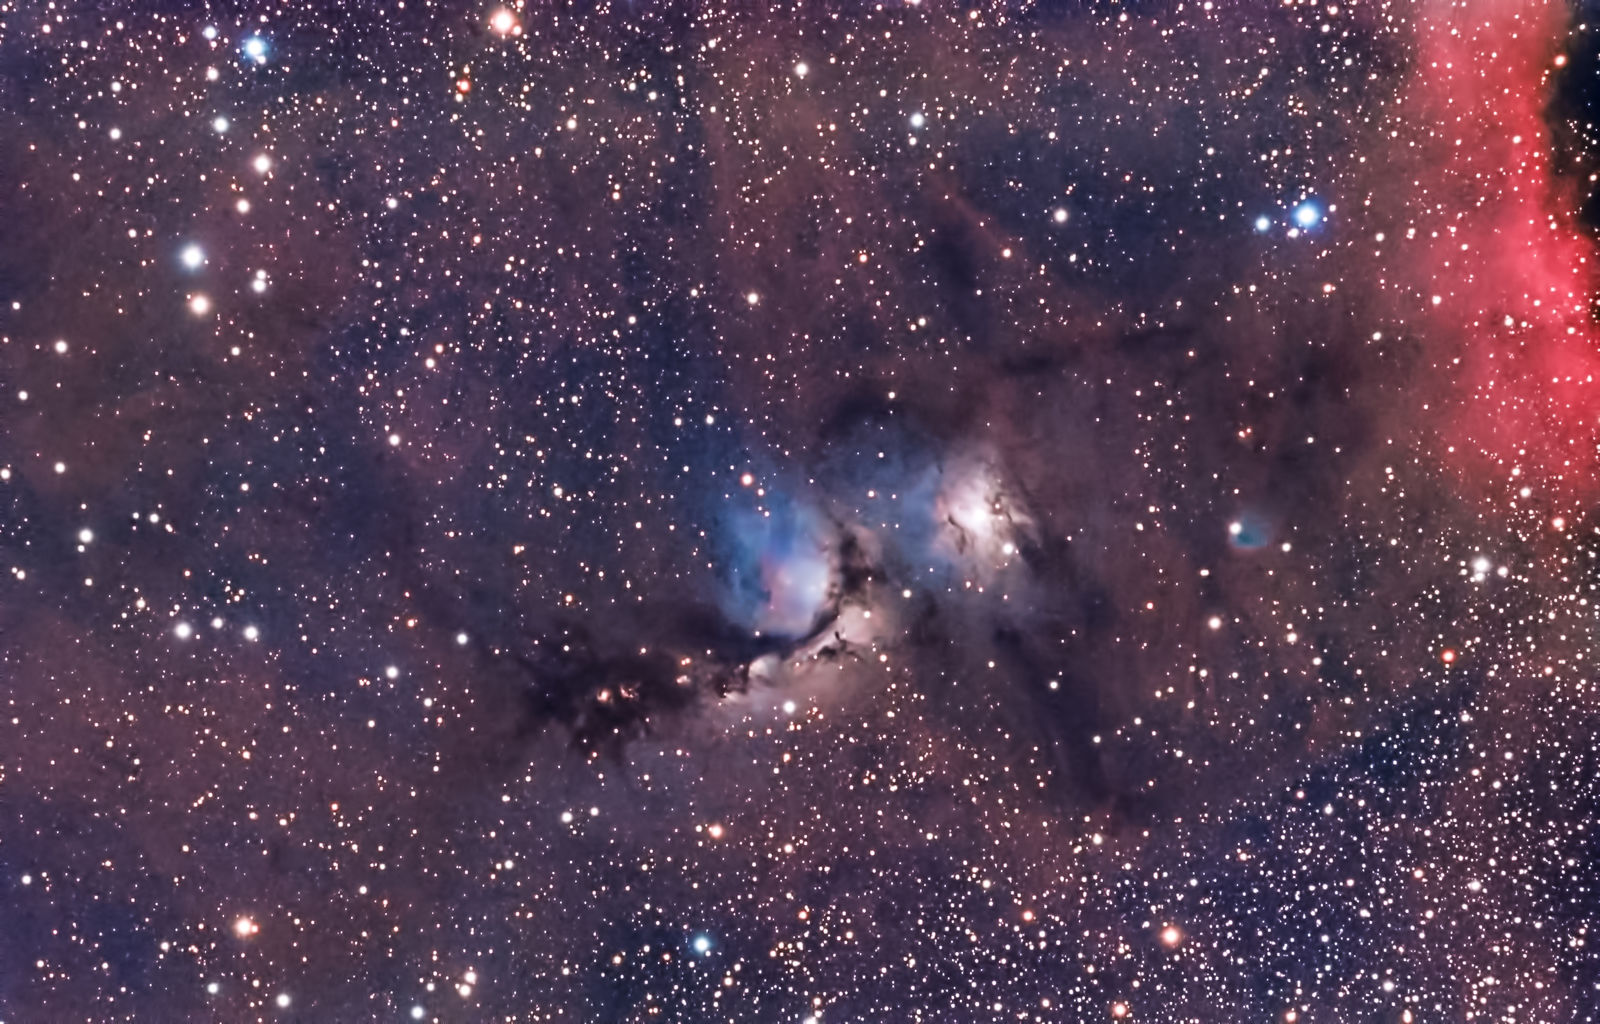 orion nebula a reflection nebula